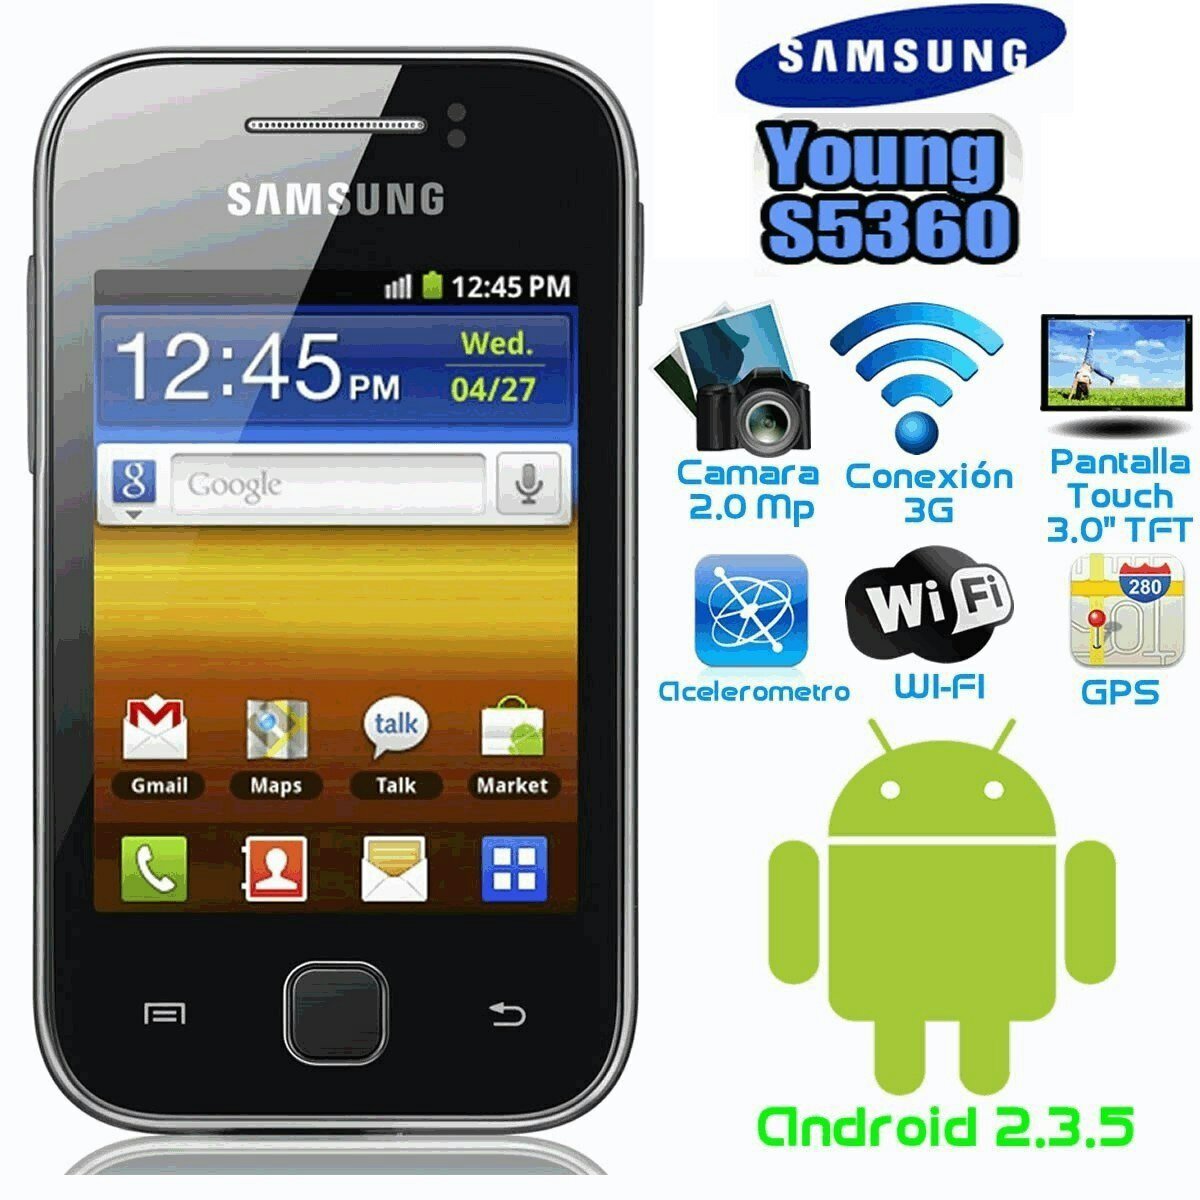 Сайт андроид самсунг. Samsung young gt-s5360. Samsung Galaxy young 5360. Samsung Galaxy y gt-s5360. Samsung Galaxy young 1.